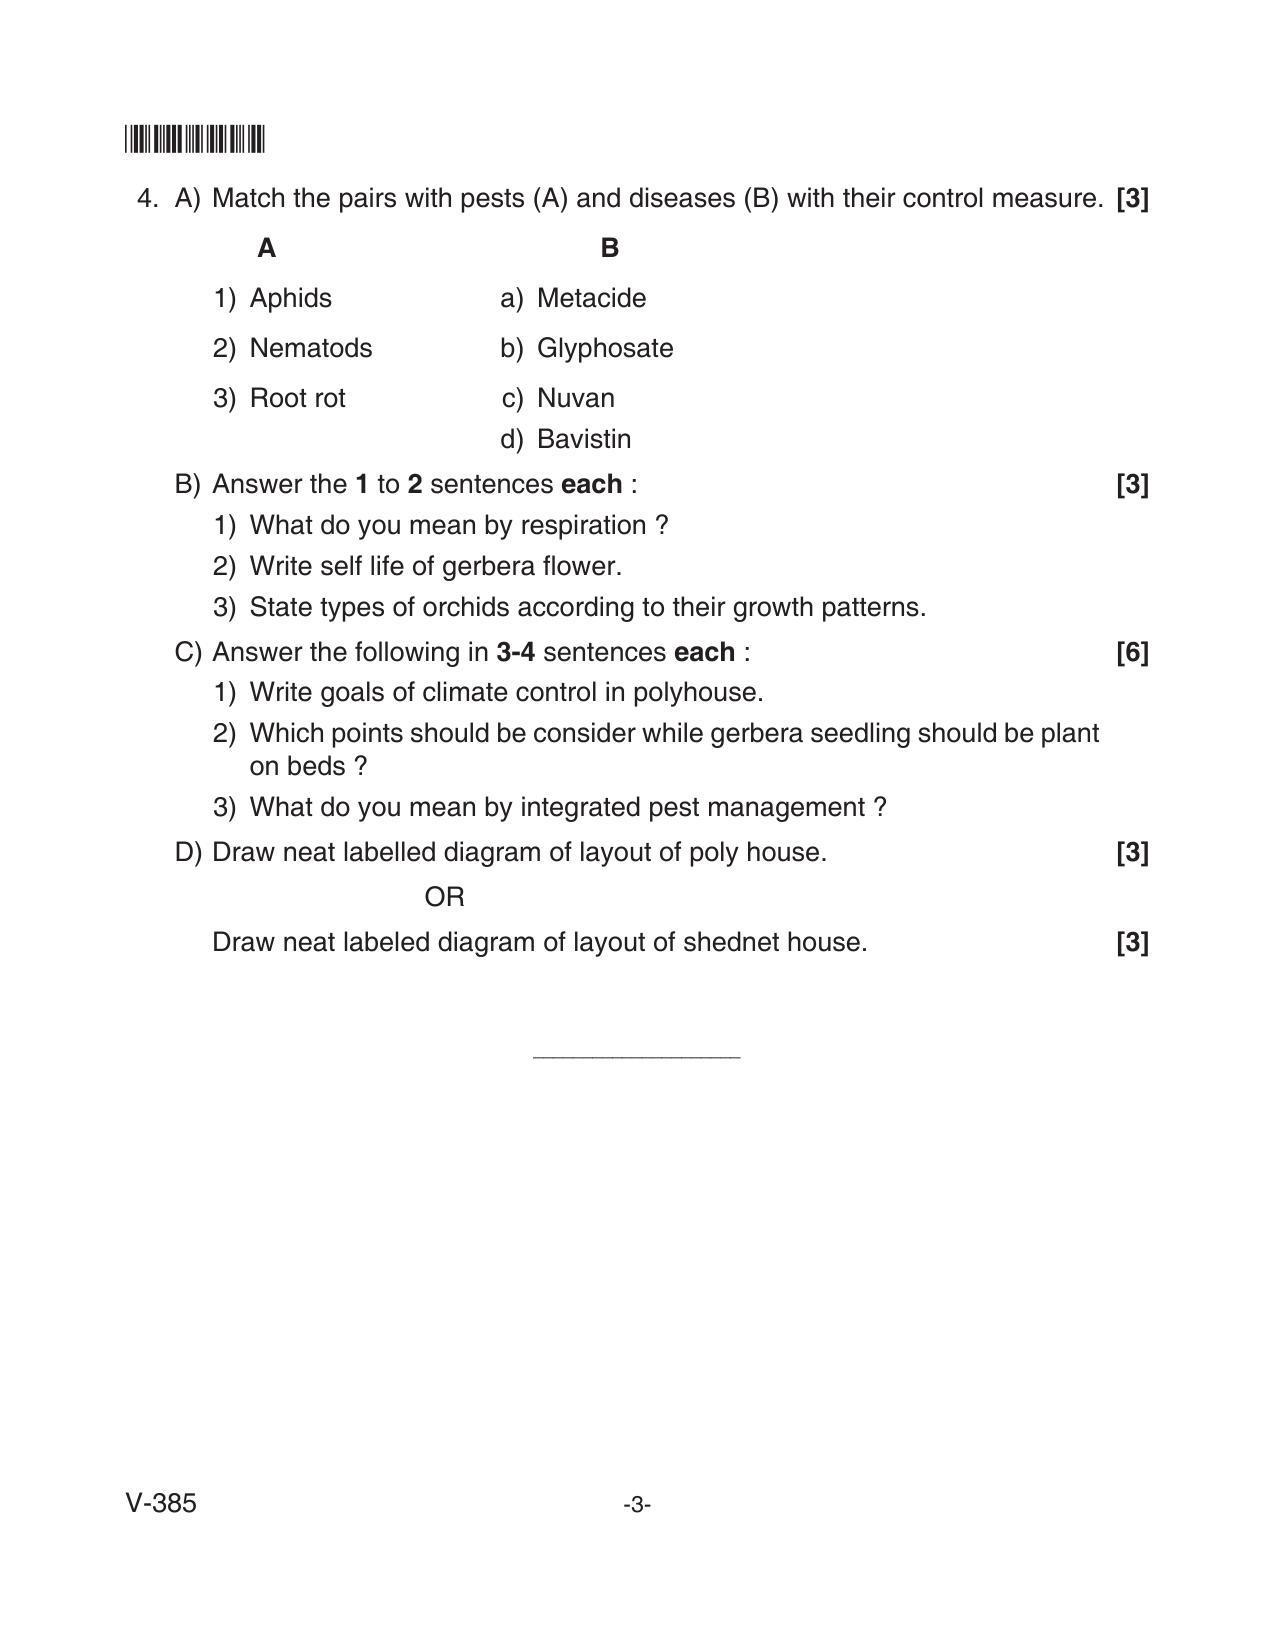 Goa Board Class 12 Floriculture  Voc 385 (June 2018) Question Paper - Page 3